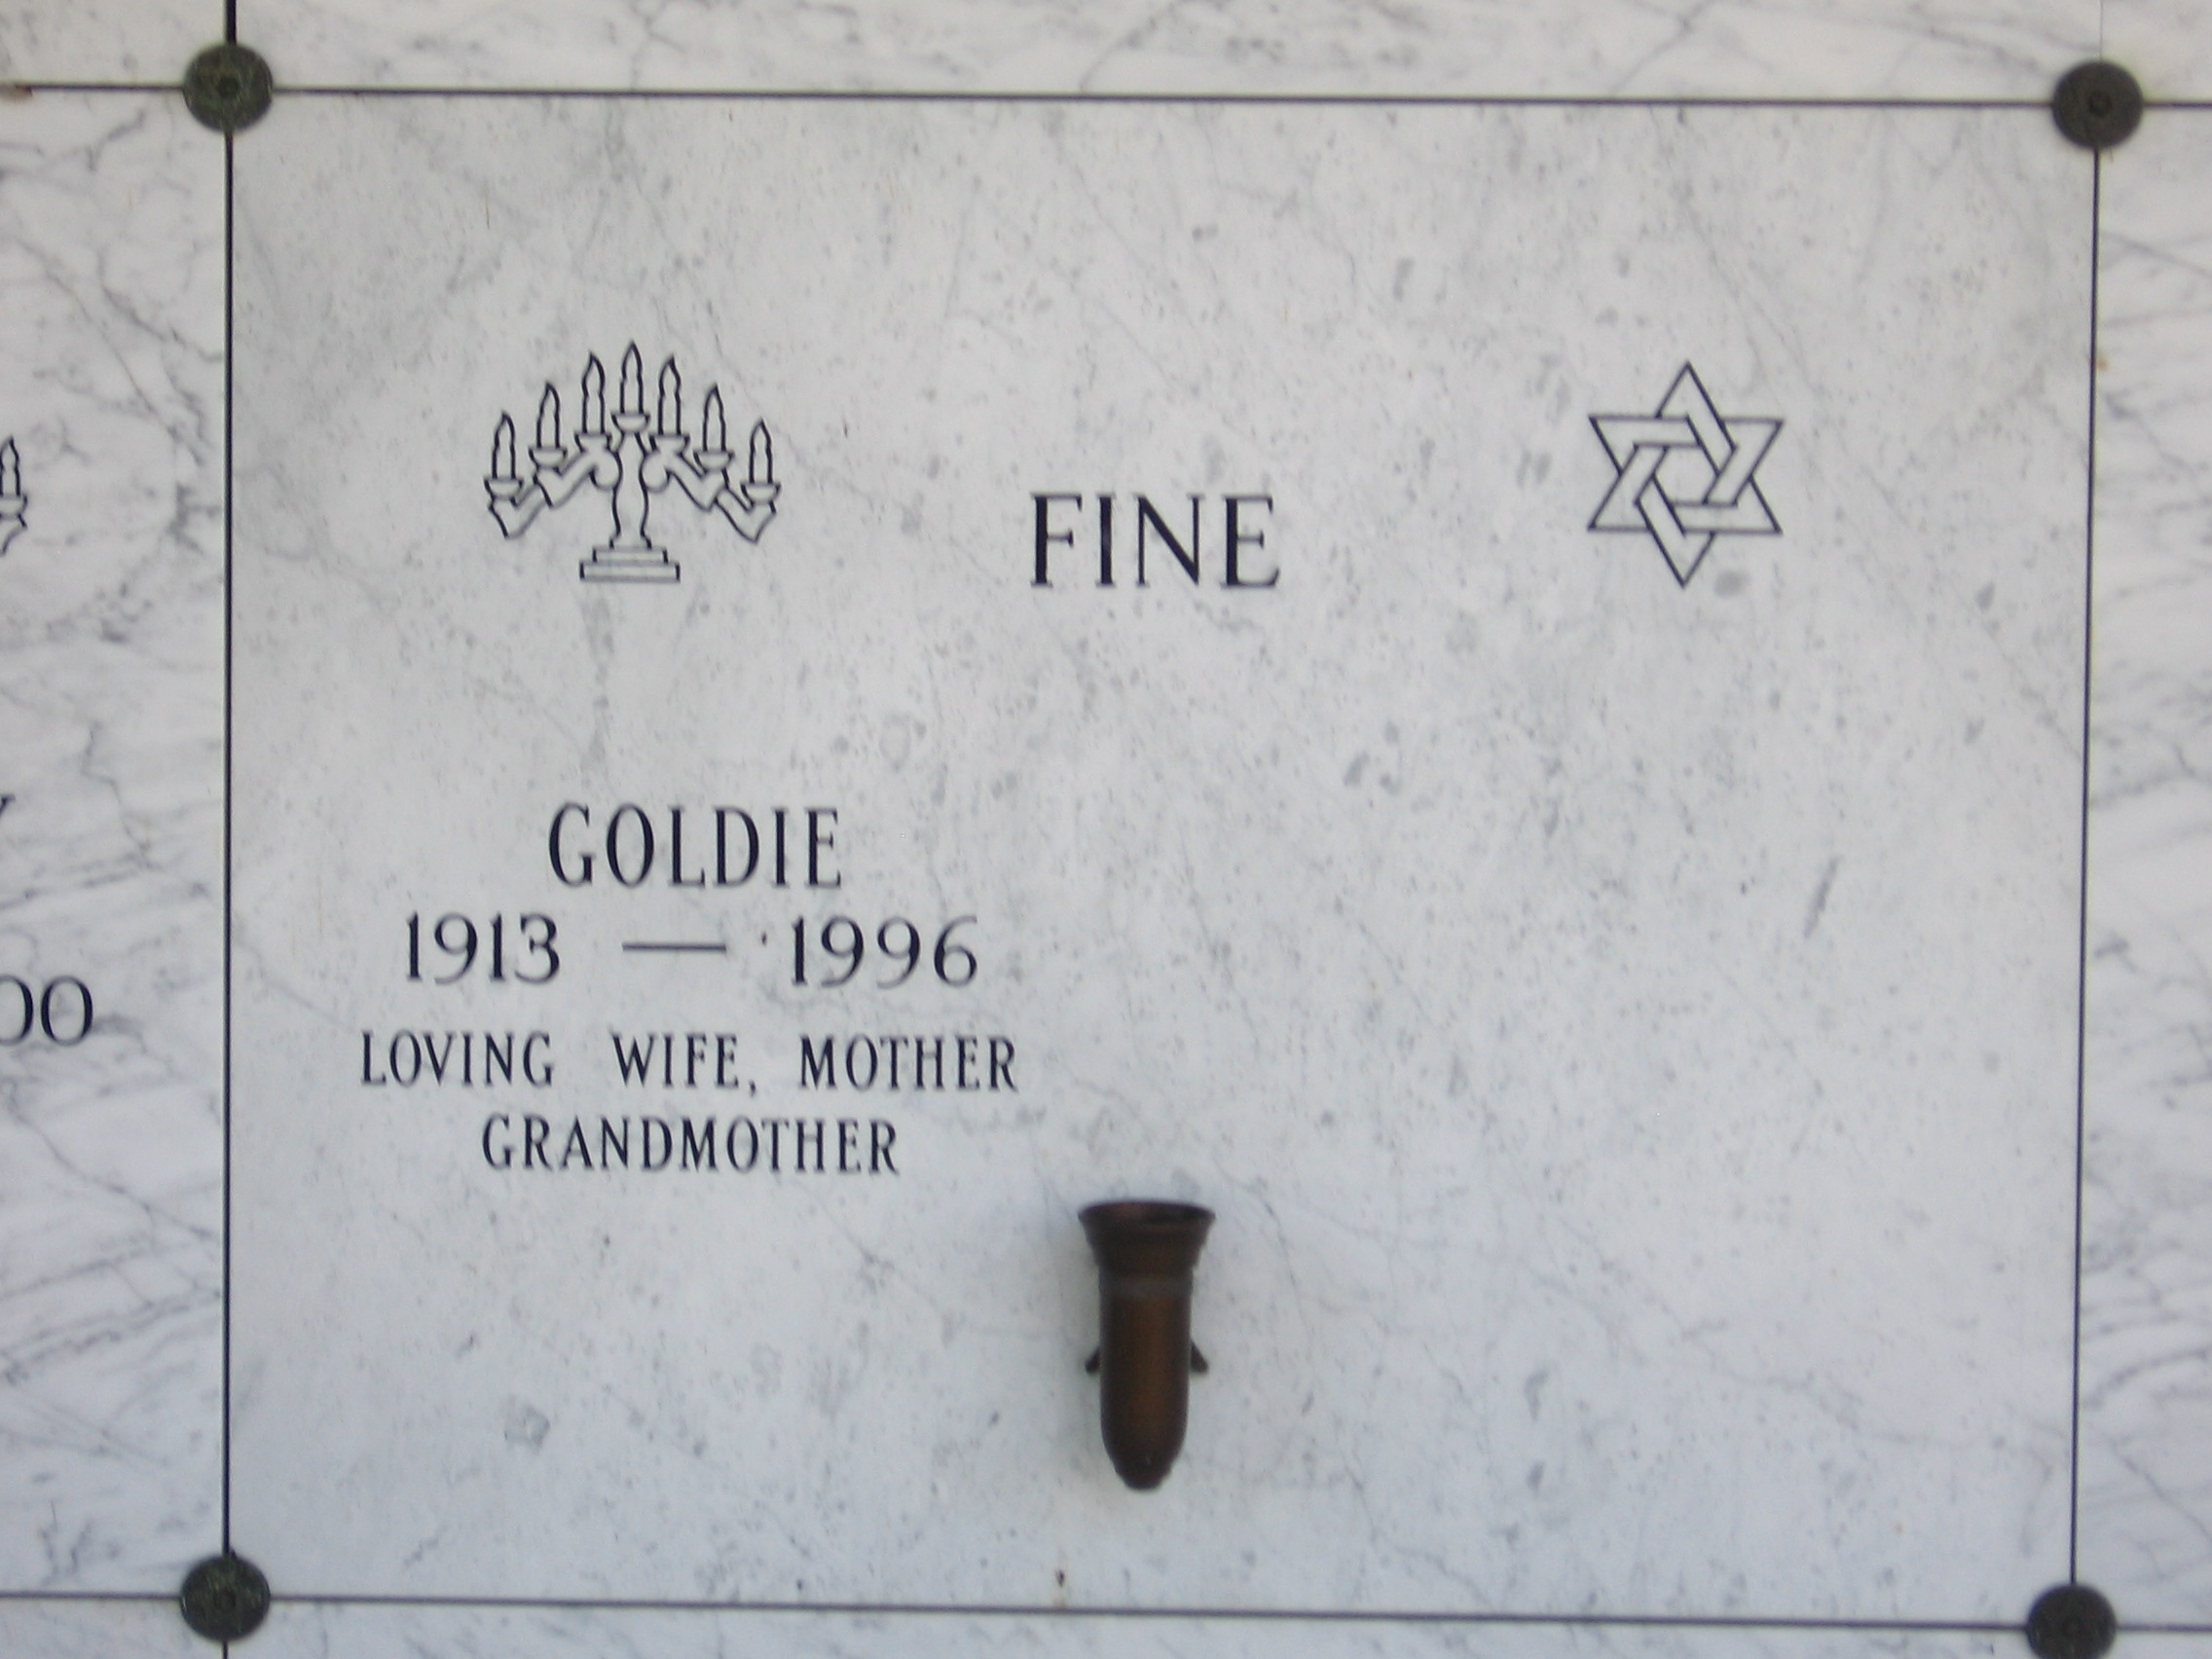 Goldie Fine